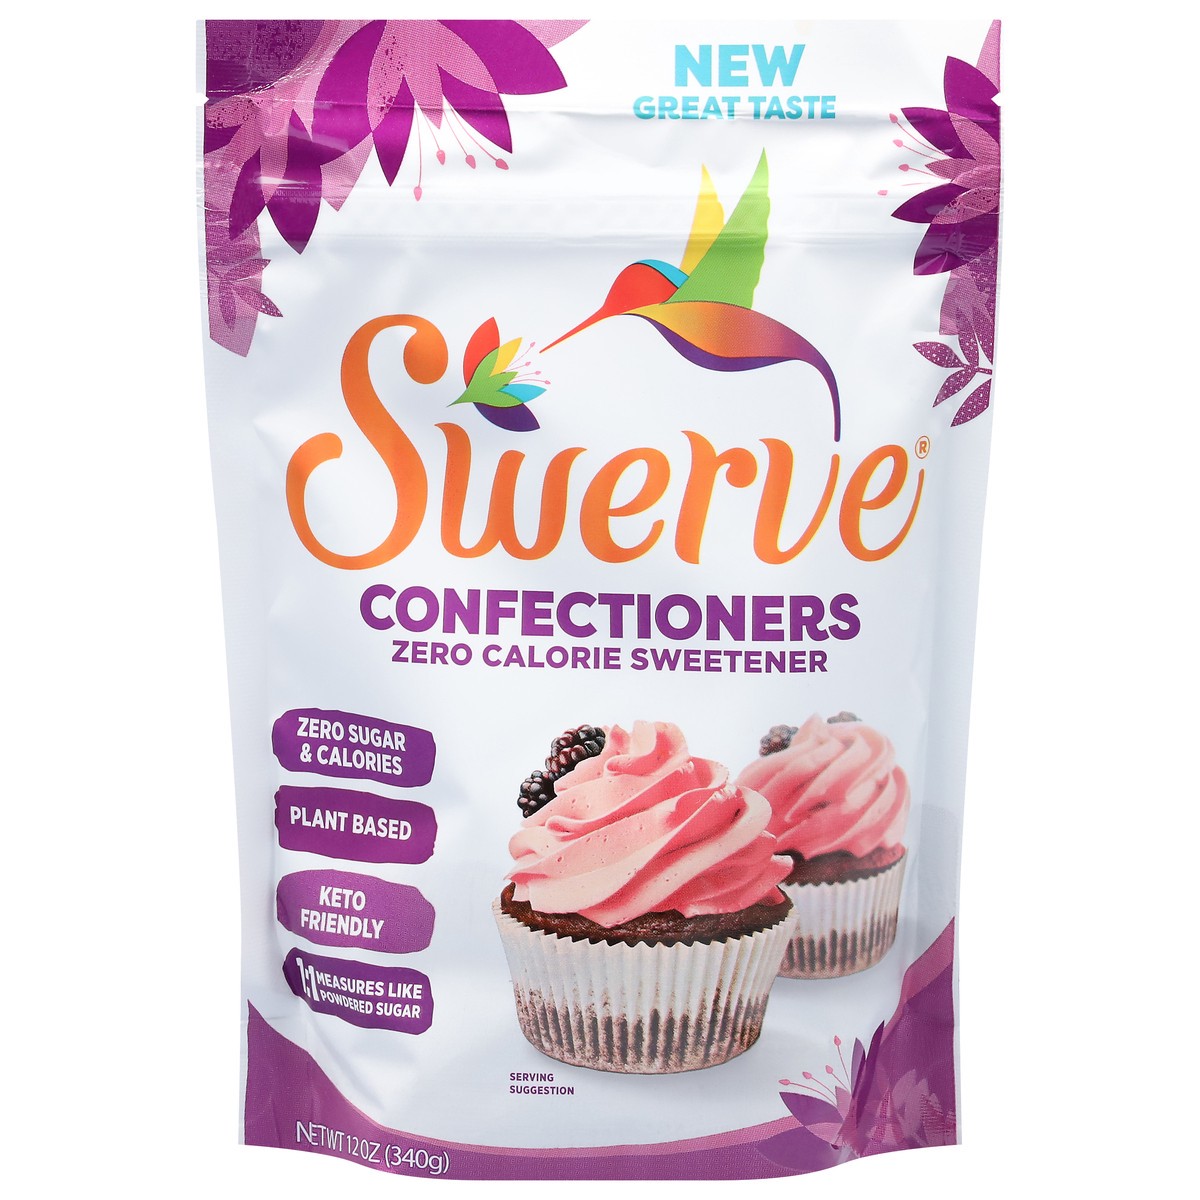 slide 1 of 9, Swerve Confectioners Keto Friendly Plant Based Zero Calorie Confectioners 12 oz, 12 oz